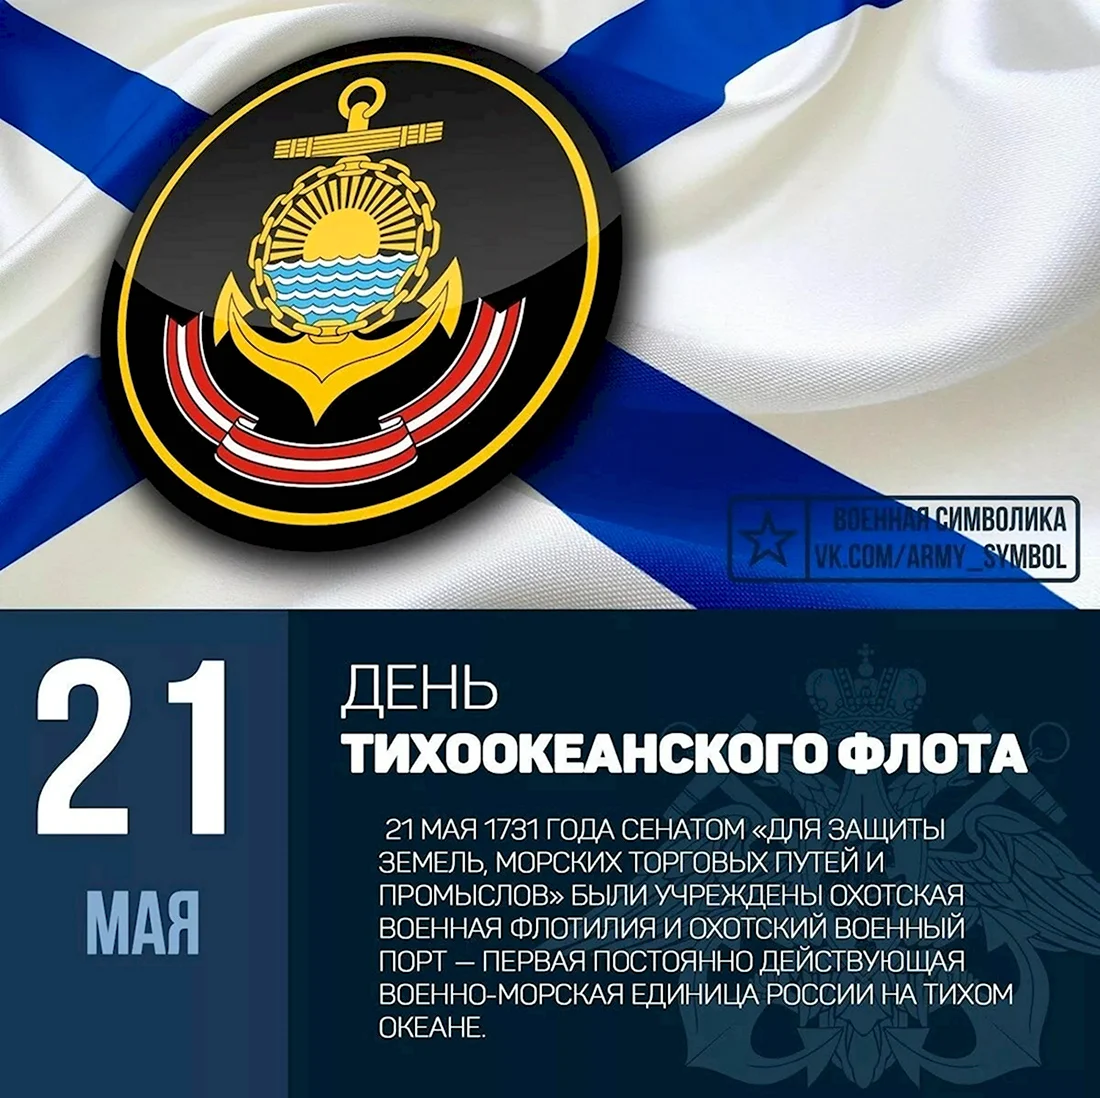 13 Мая день Черноморского флота ВМФ России. Открытка, картинка с поздравлением, с праздником